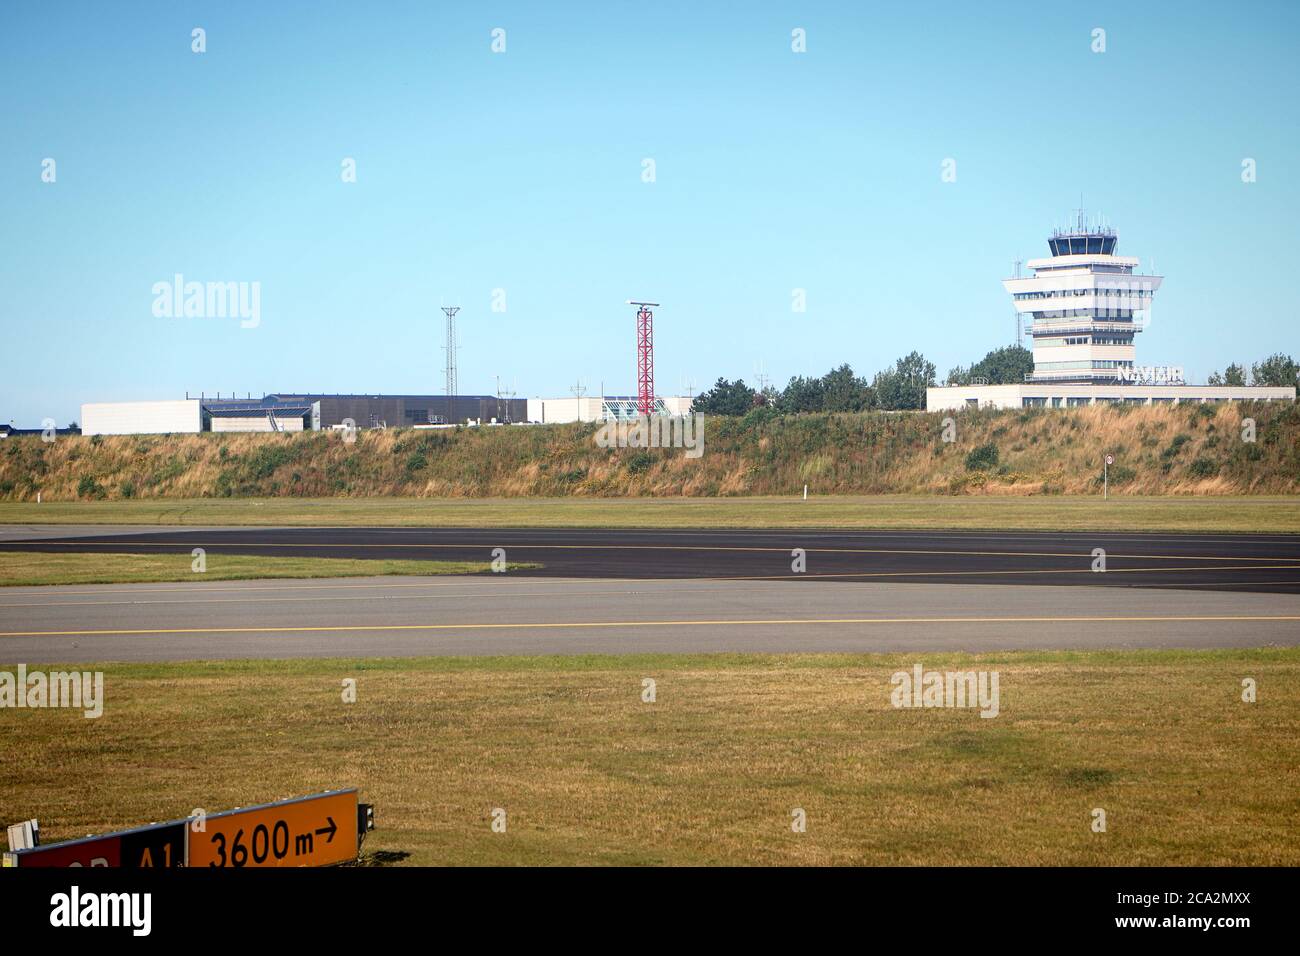 Dänemark, Flughafen Kopenhagen:Blick auf den Flugplatz mit dem Kontrollturm und leeren Start- und Landebahnen zur Coronavirus-Zeit Stockfoto